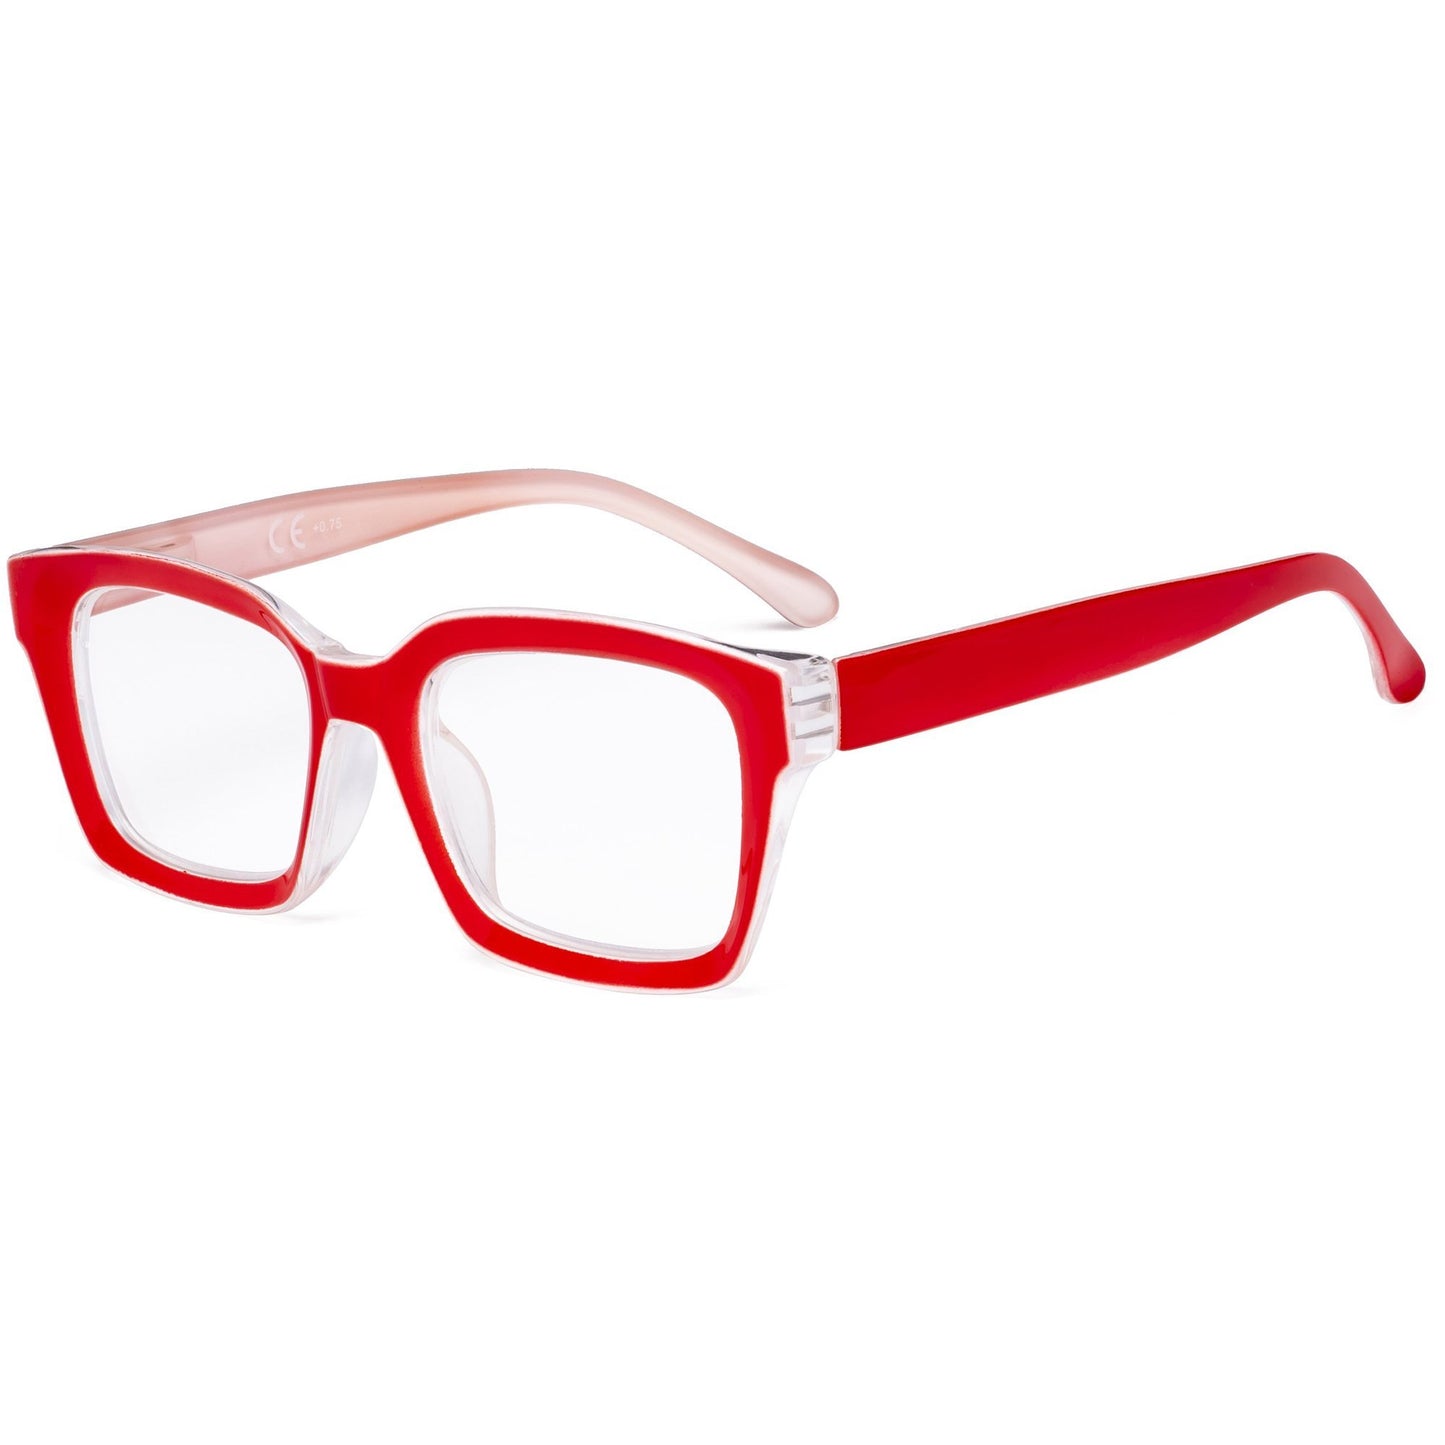 Oversized Reading Glasses Square Readers for Women R9106-1